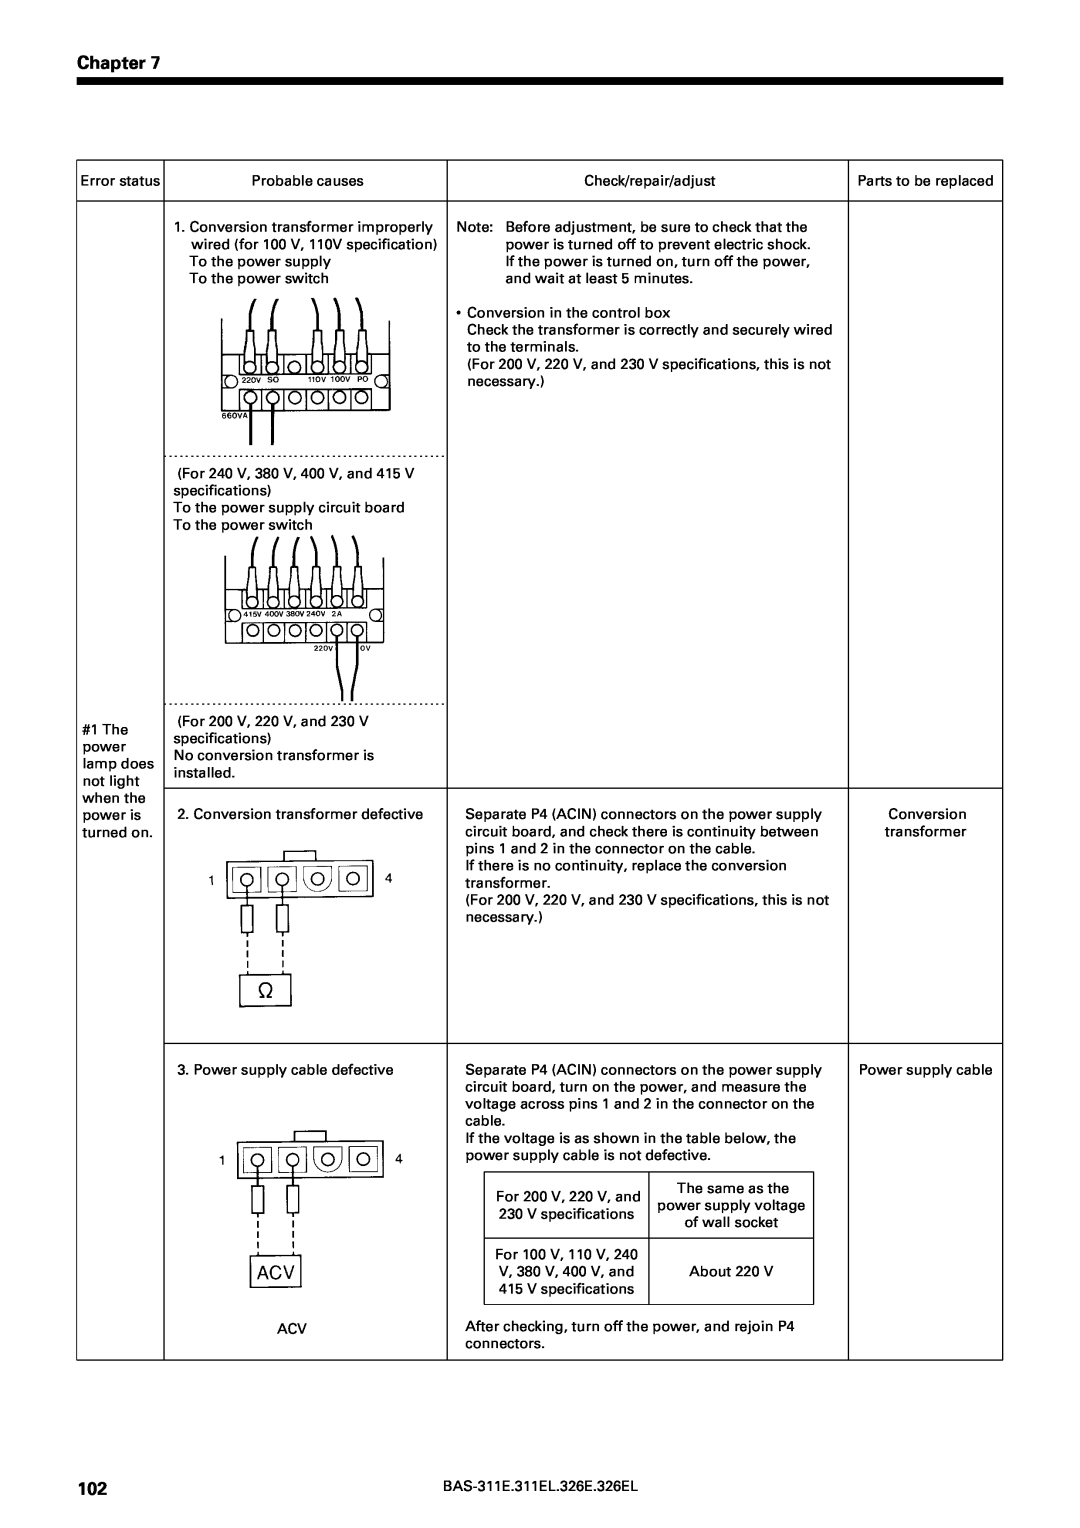 Brother BAS-311E service manual Chapter, For 200 V, 220 V, and, For 100 V, 110 V, V, 380 V, 400 V, and 